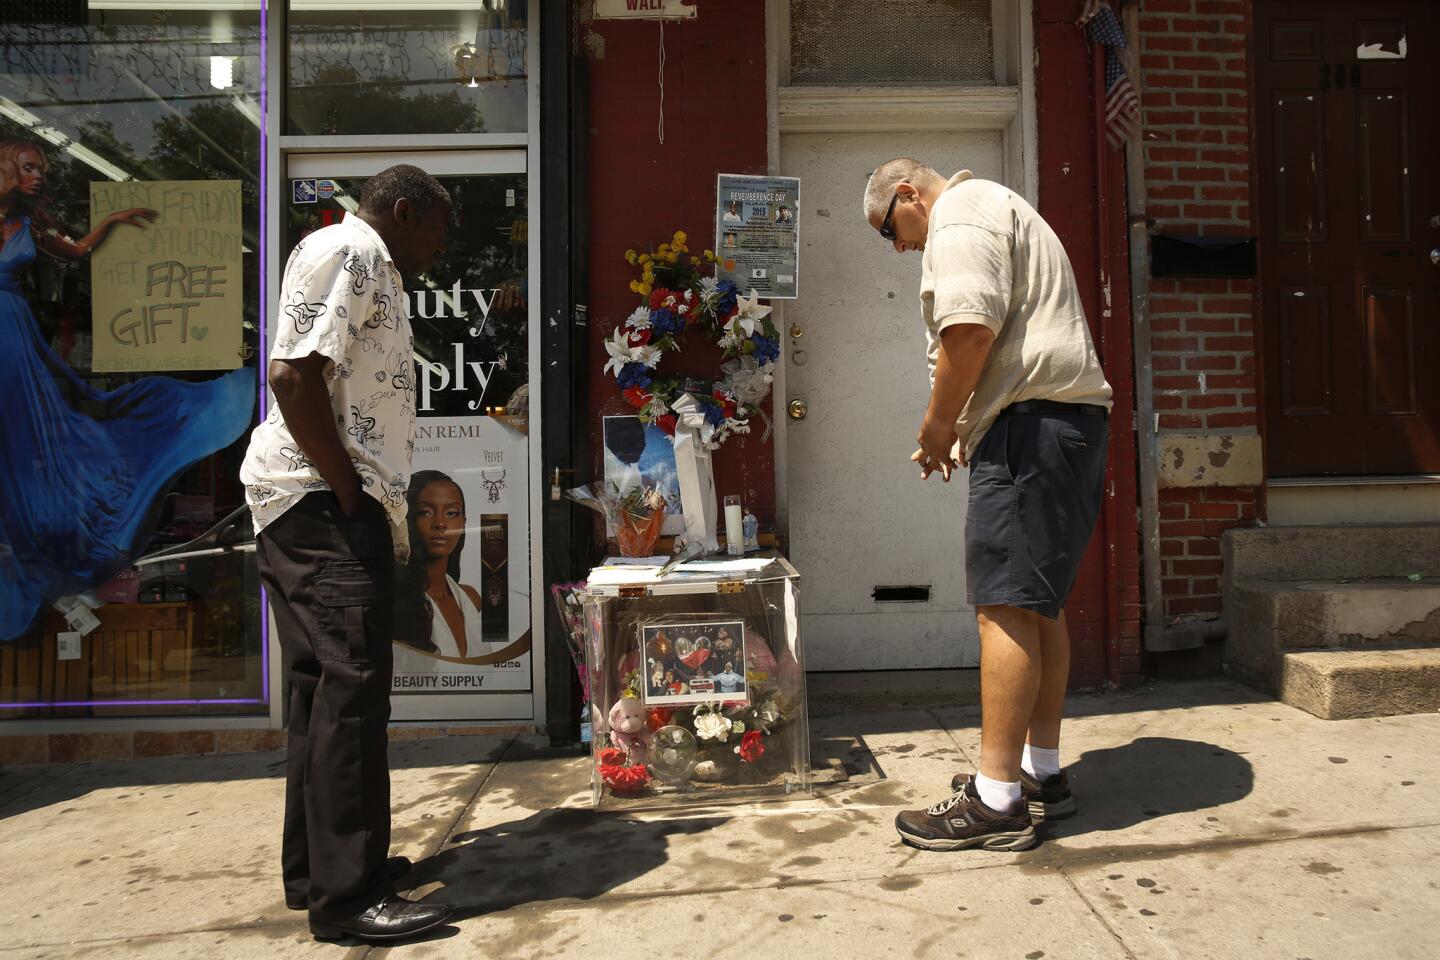 Anniversary of Eric Garner's death